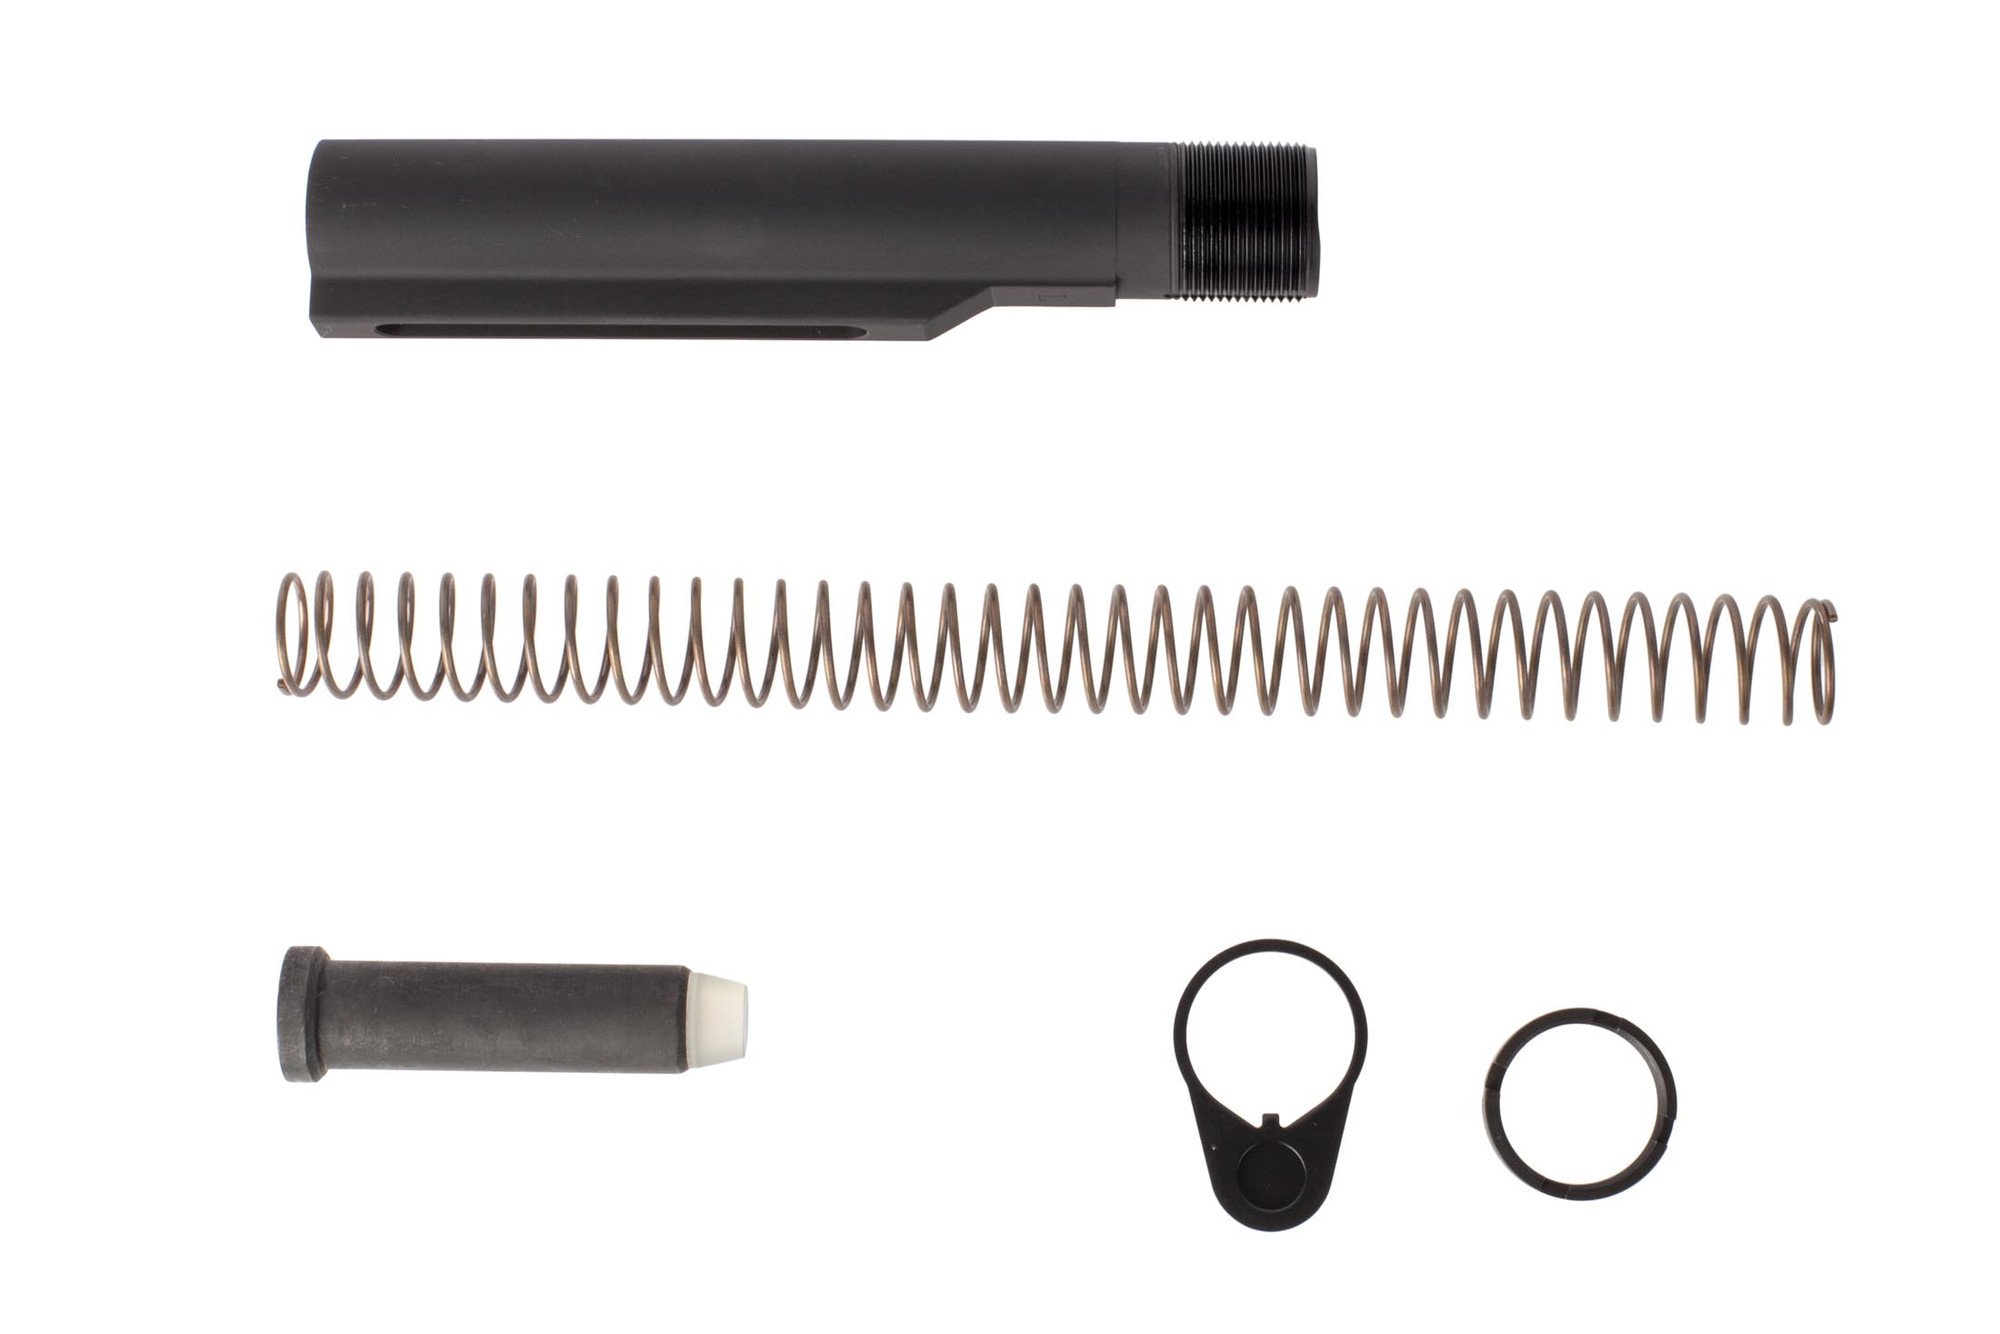 Luth-AR Complete 9mm AR-15 Buffer Kit - MIL-SPEC - $50.71 | gun.deals